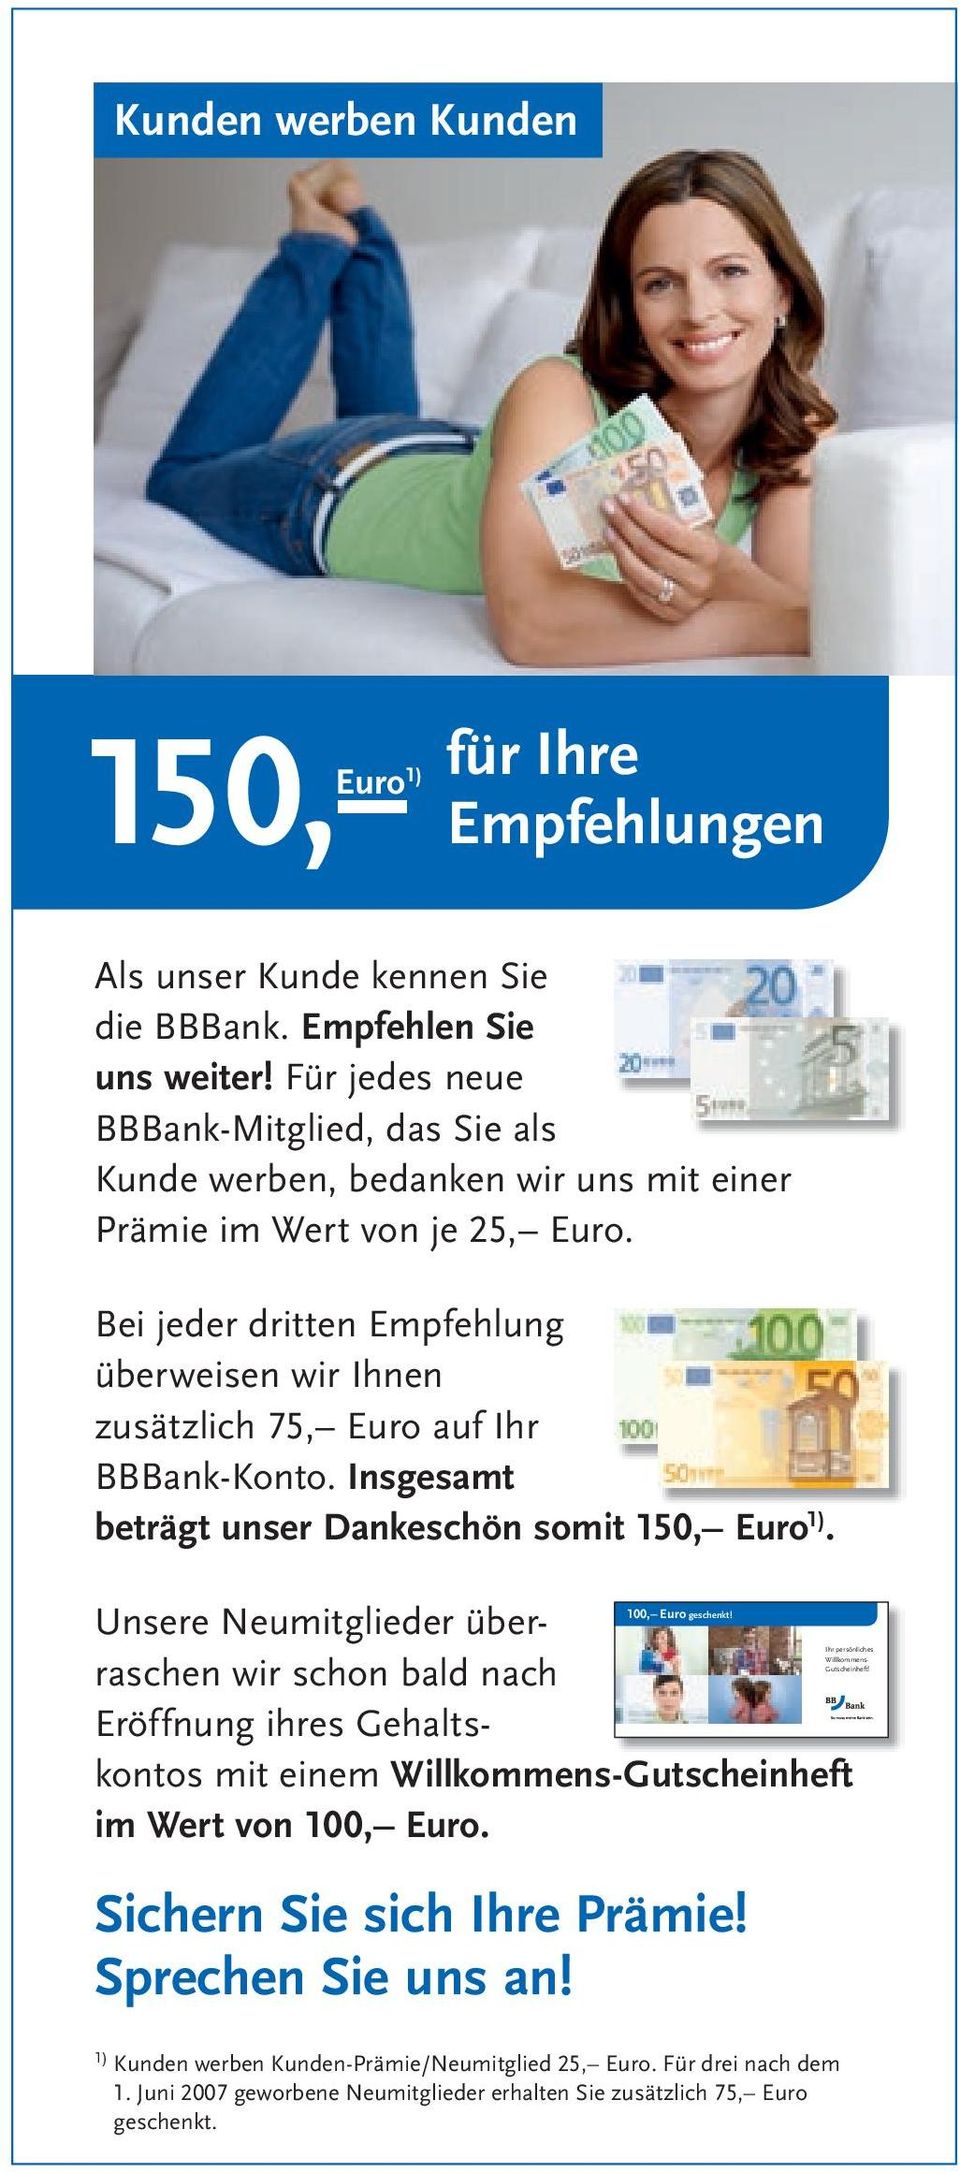 Bei jeder dritten Empfehlung überweisen wir Ihnen zusätzlich 75, Euro auf Ihr BBBank-Konto. Insgesamt beträgt unser Dankeschön somit 150, Euro 1). 100, Euro geschenkt!